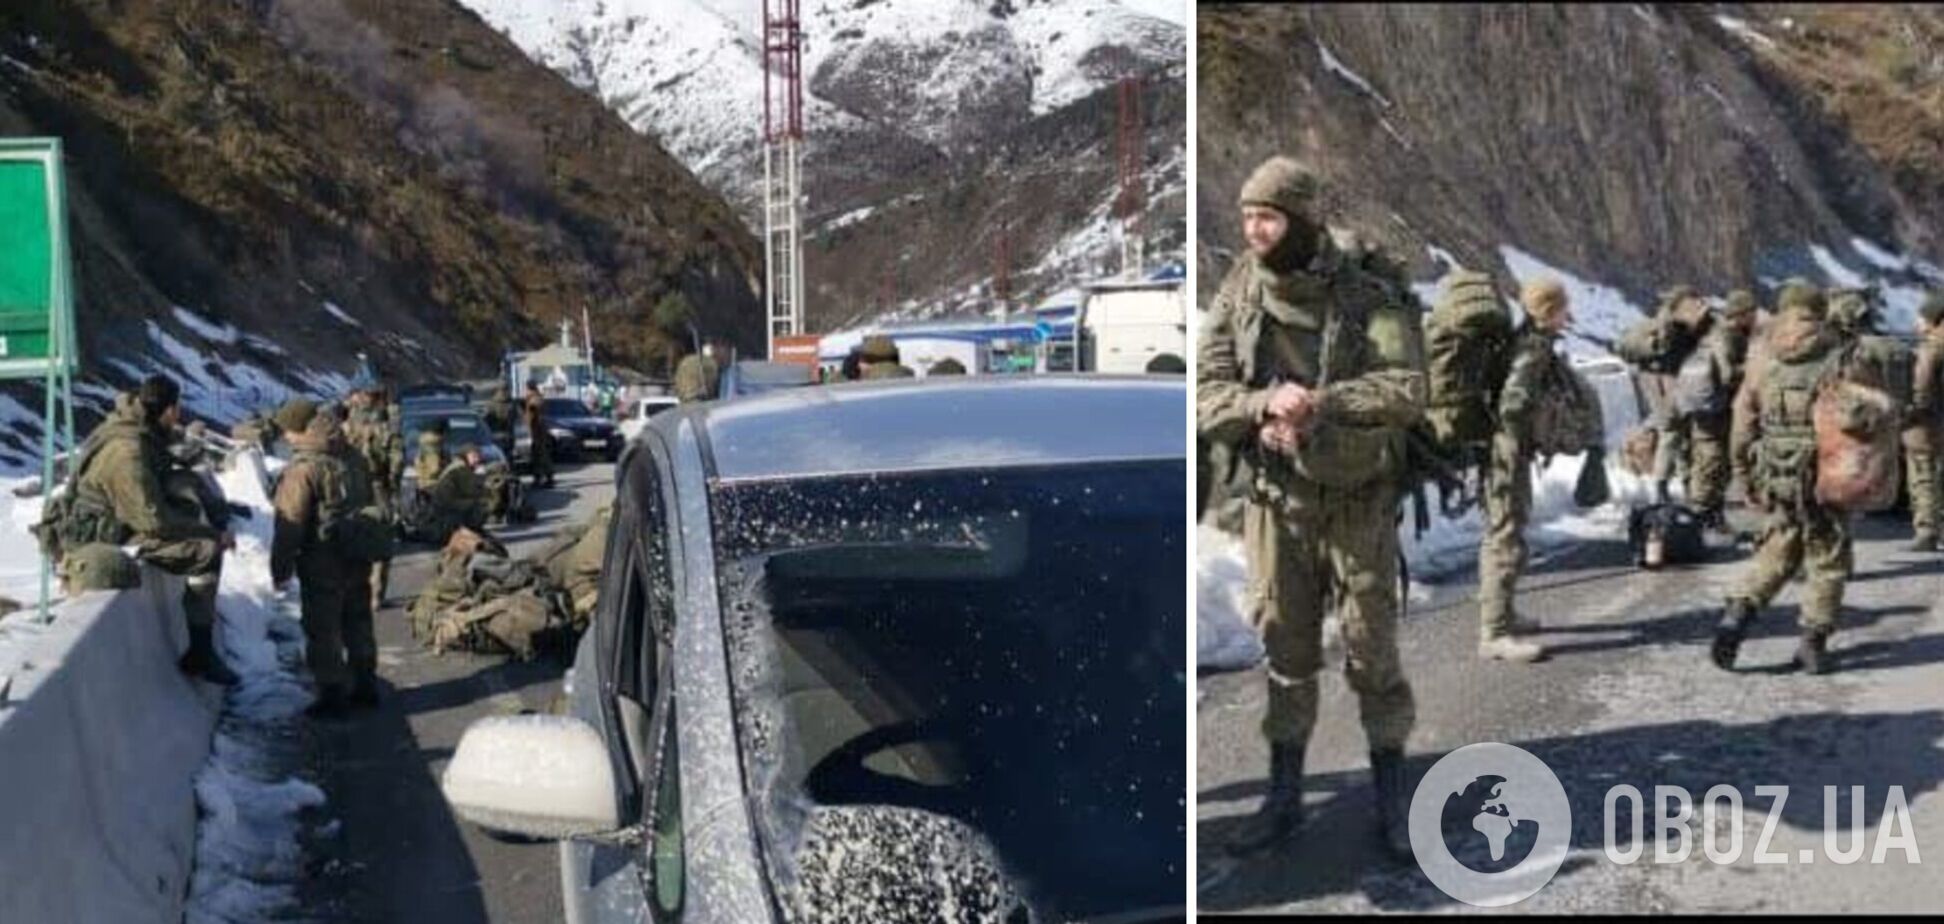 Солдаты из Южной Осетии отказались 'освобождать' Донбасс и вернулись на родину